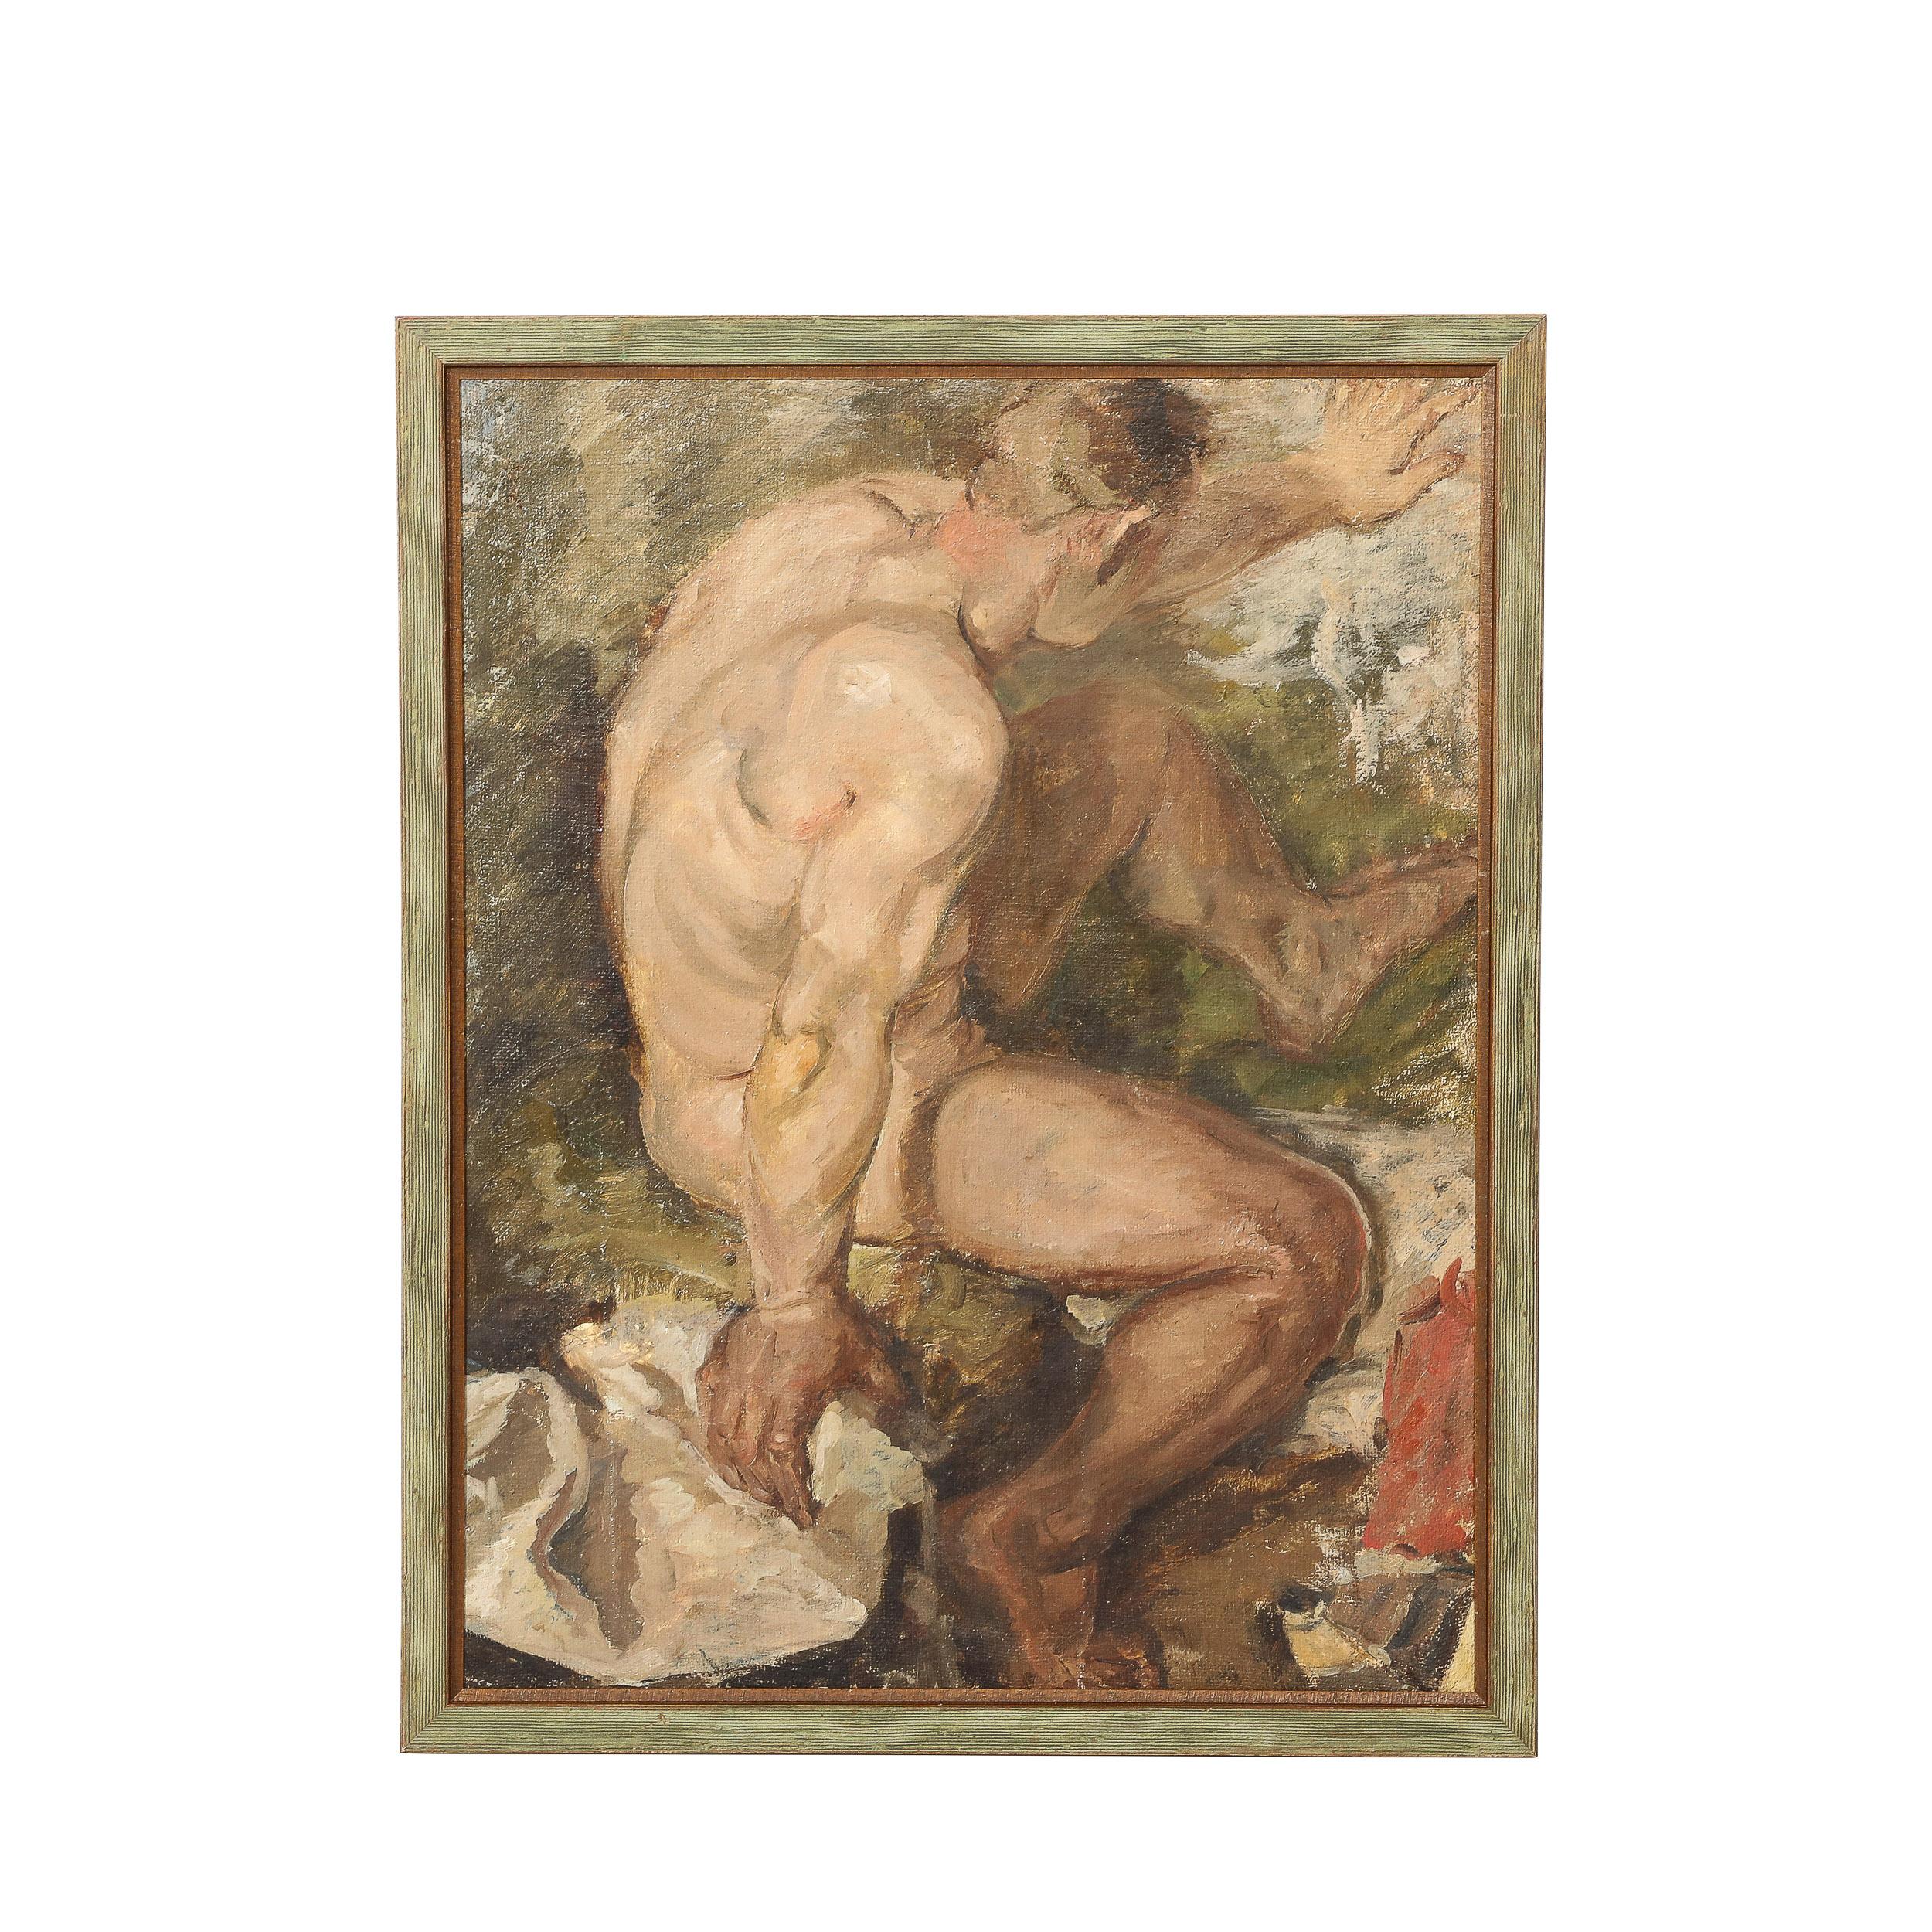 Peinture romantique à l'huile sur toile sur toile d'une figure masculine nue se baignant dans une rivière 